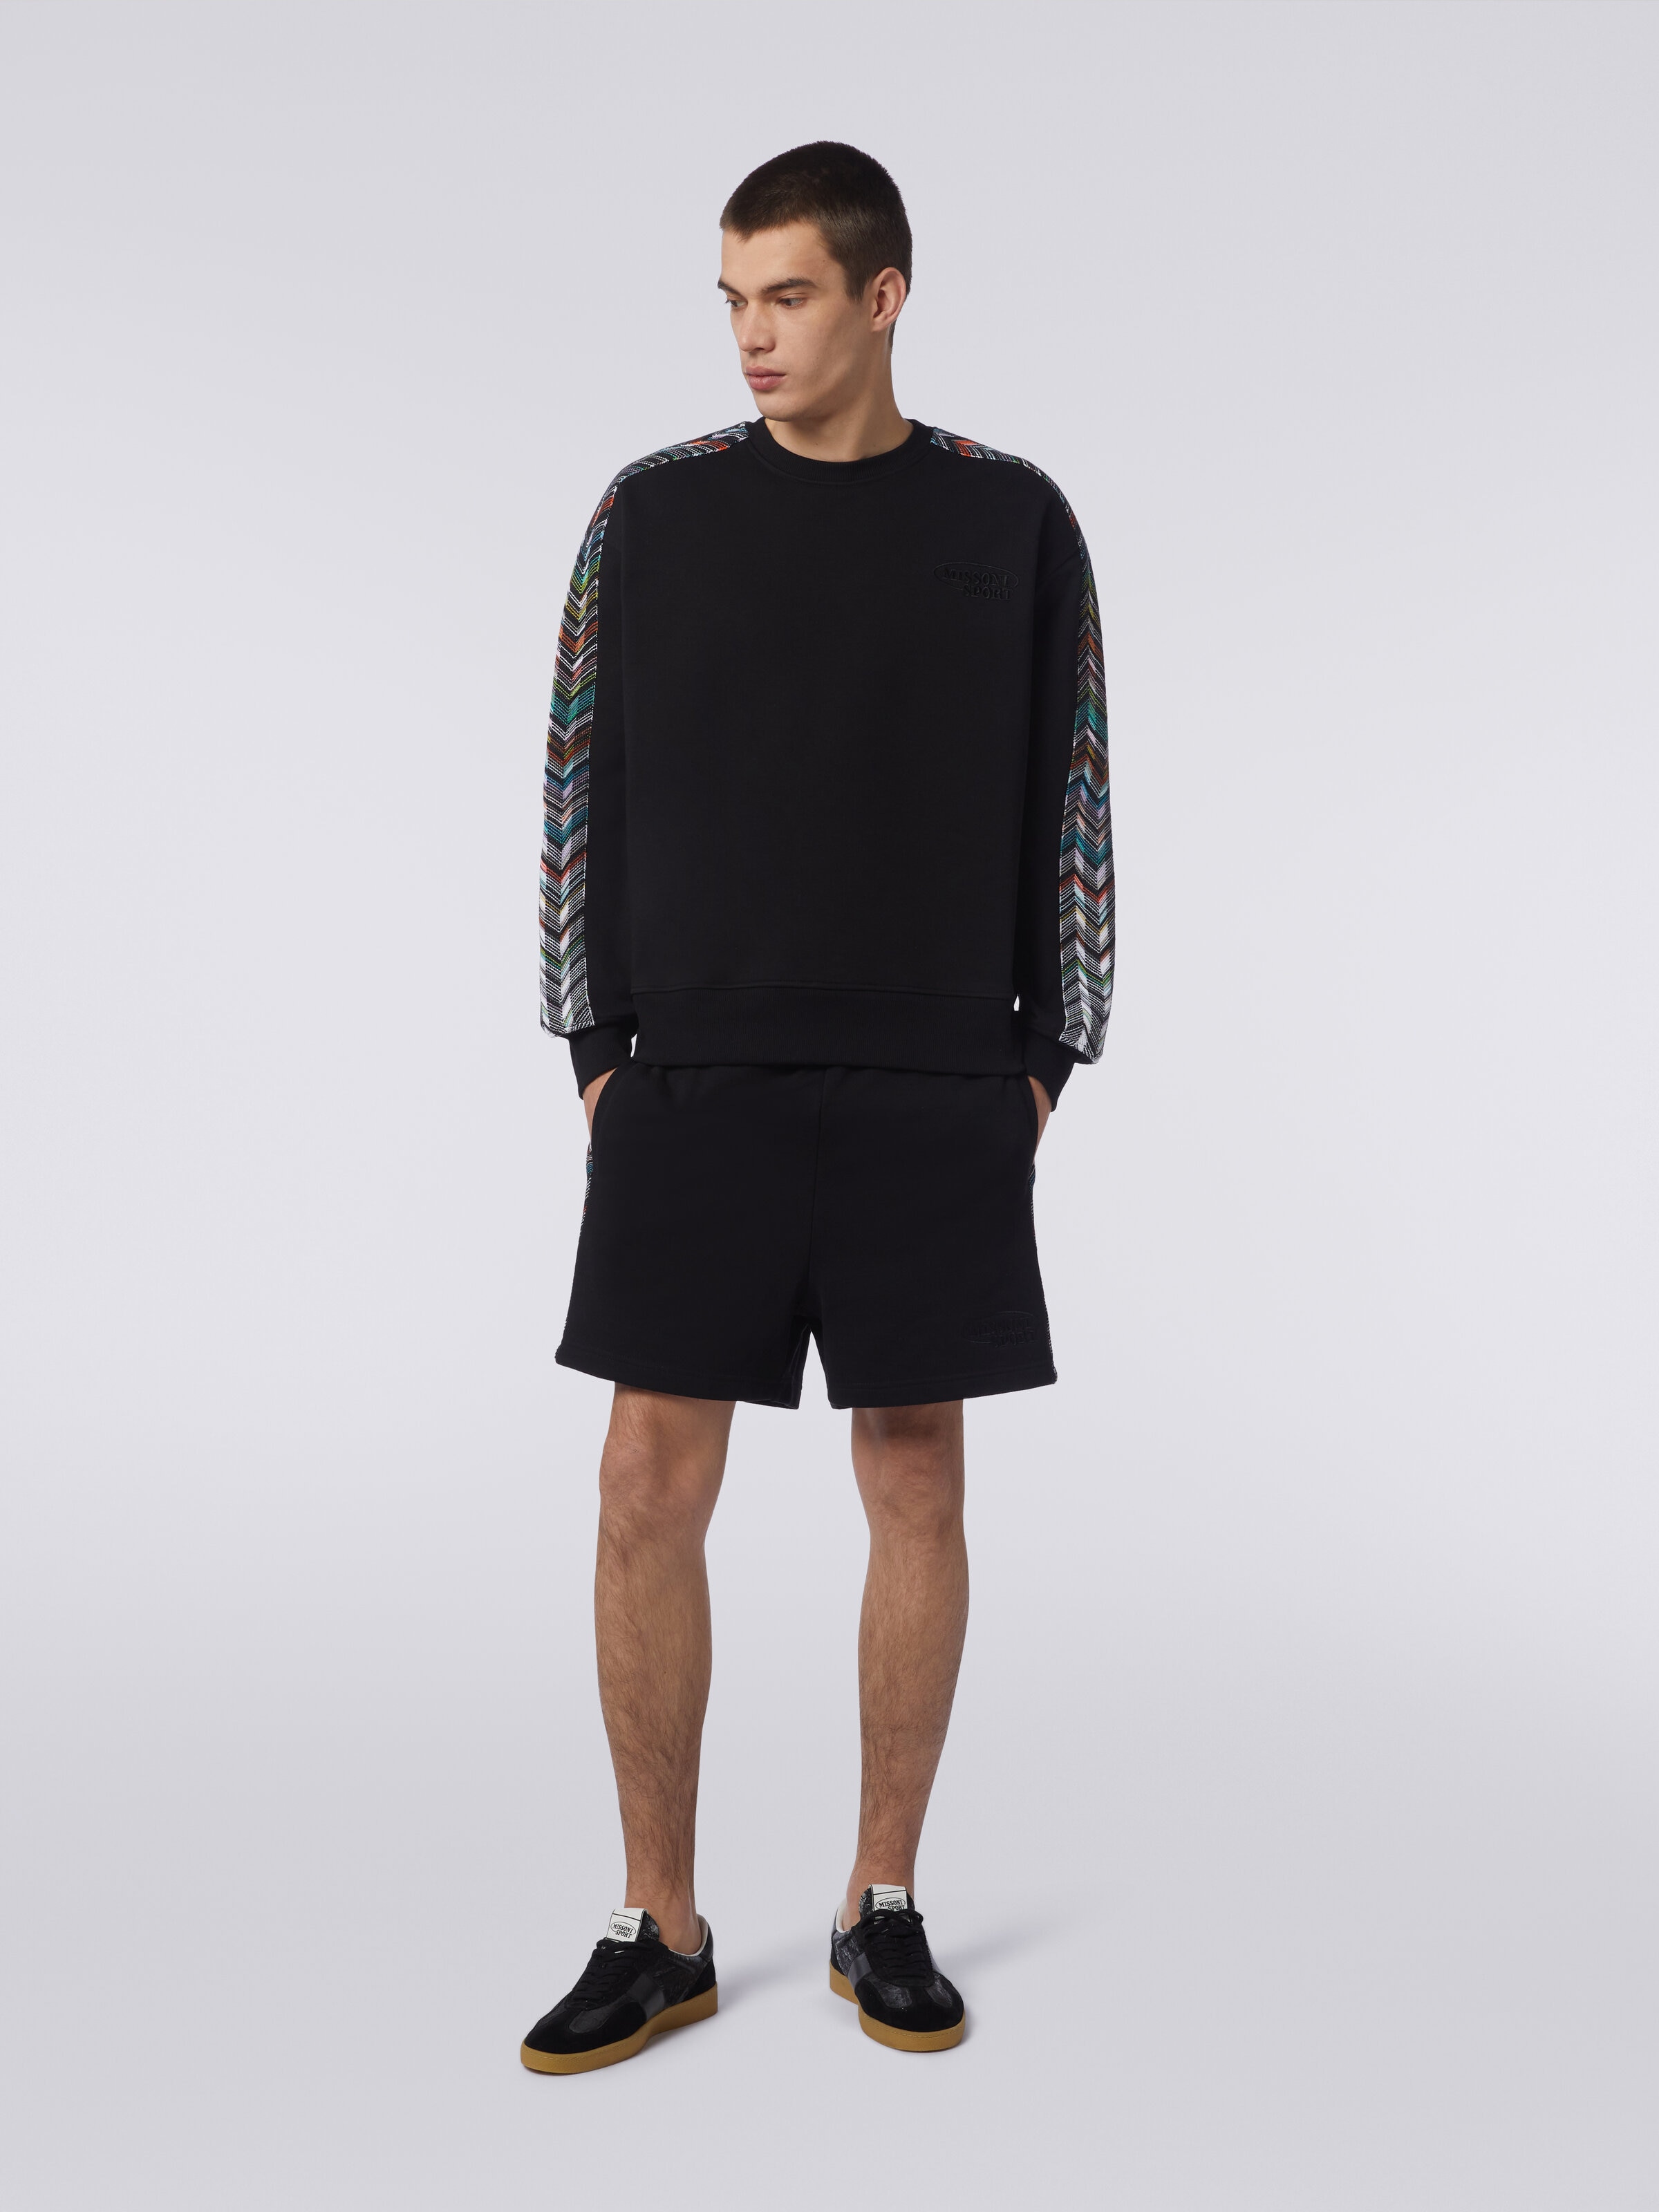 Crew-neck sweatshirt in cotton with zigzag knit details, Black    - 1